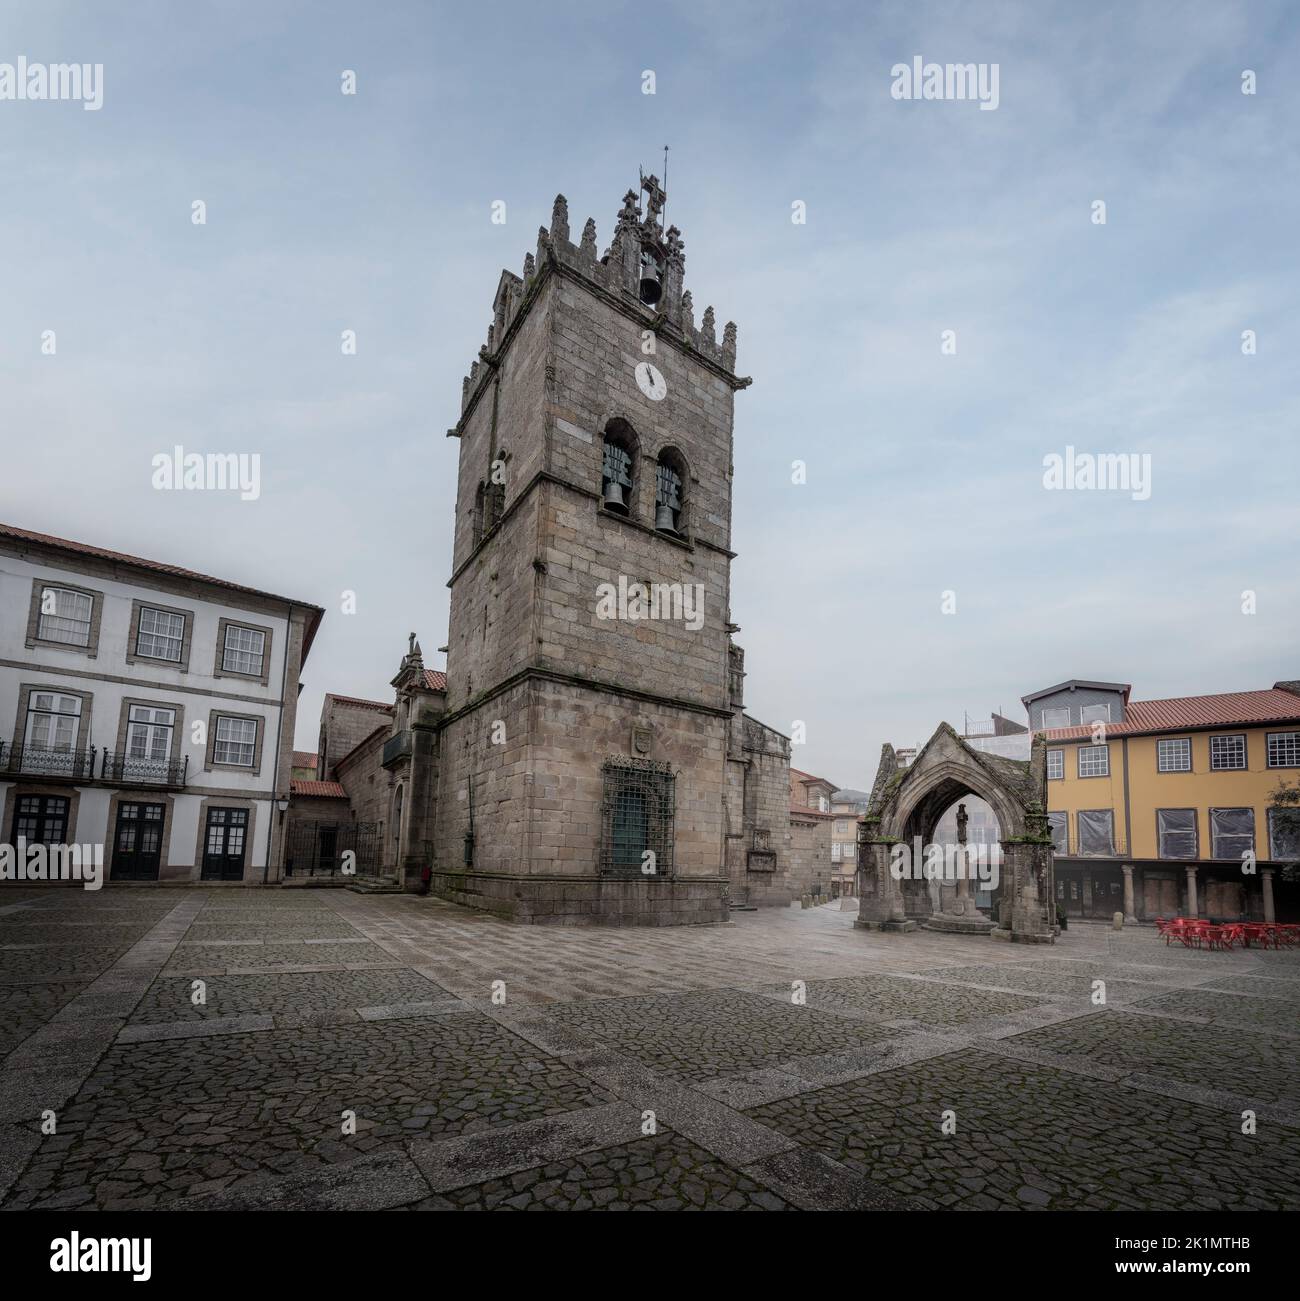 Largo da Oliveira con la iglesia de Nossa Senhora da Oliveira y el monumento gótico de la Batalla del Salado (Padrao do Saldo) - Guimaraes, Portugal Foto de stock